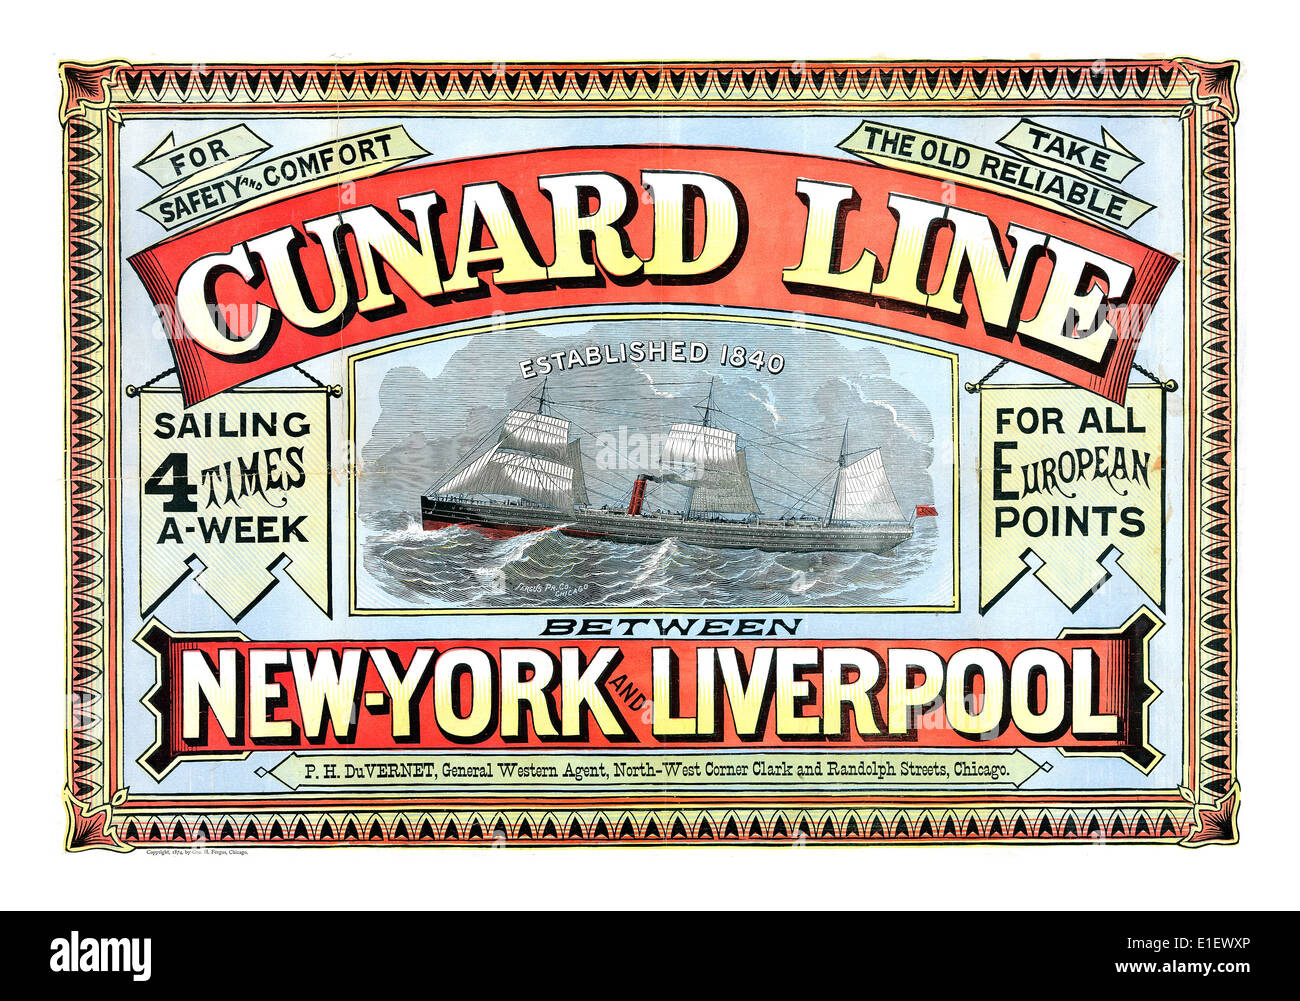 CUNARD LINE POSTER di spedizione del XIX secolo vintage poster storico per Cunard Line vela Trans Atlantic da Liverpool a New York Foto Stock